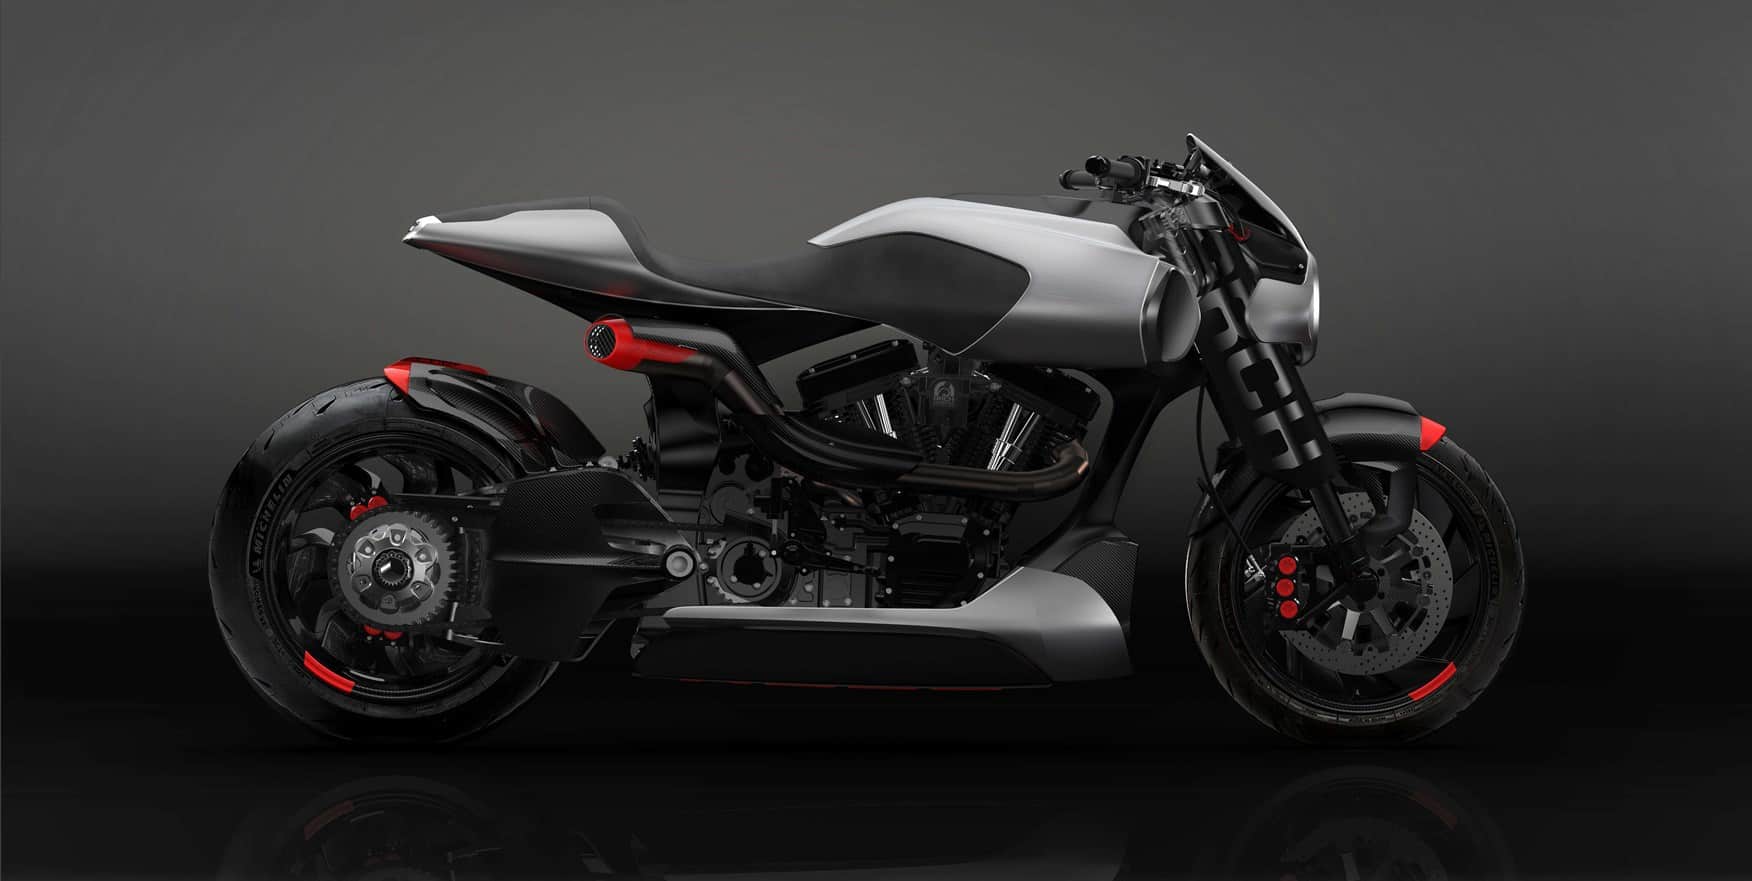 Keanu Reeves Arch Motorcycle 2